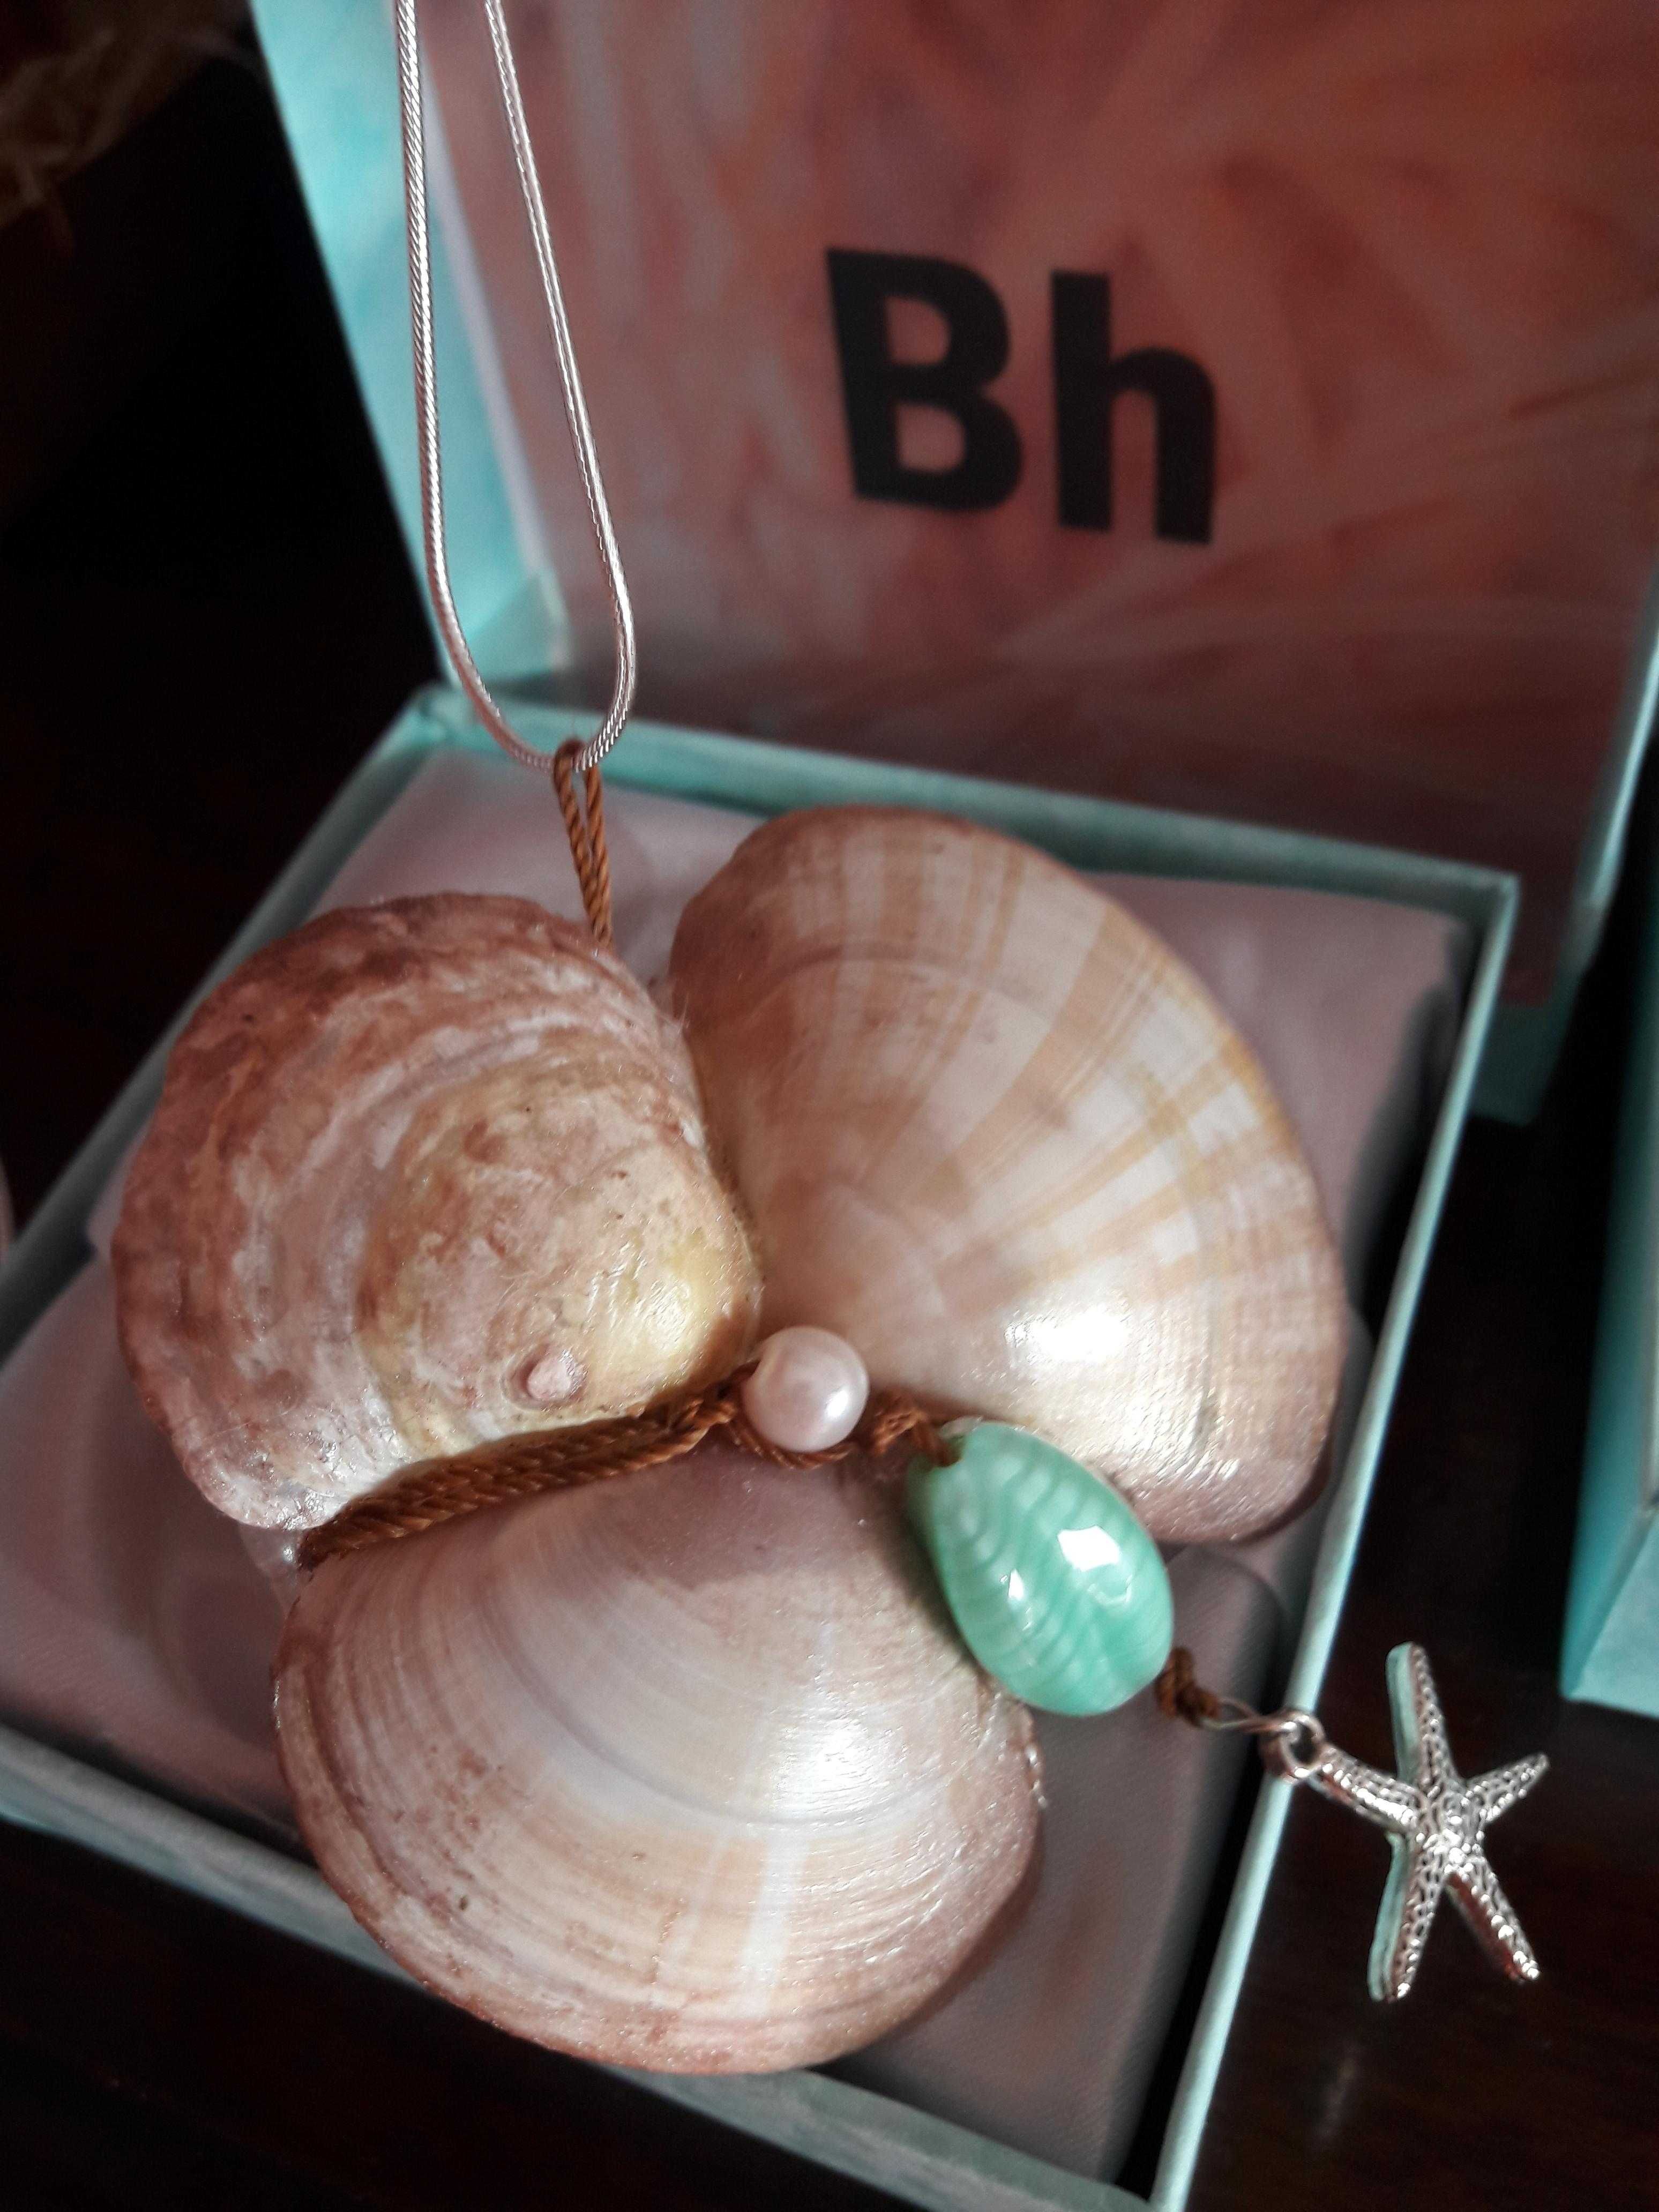 Bijuteria feitas de conchas do oceano: brincos, pingentes.